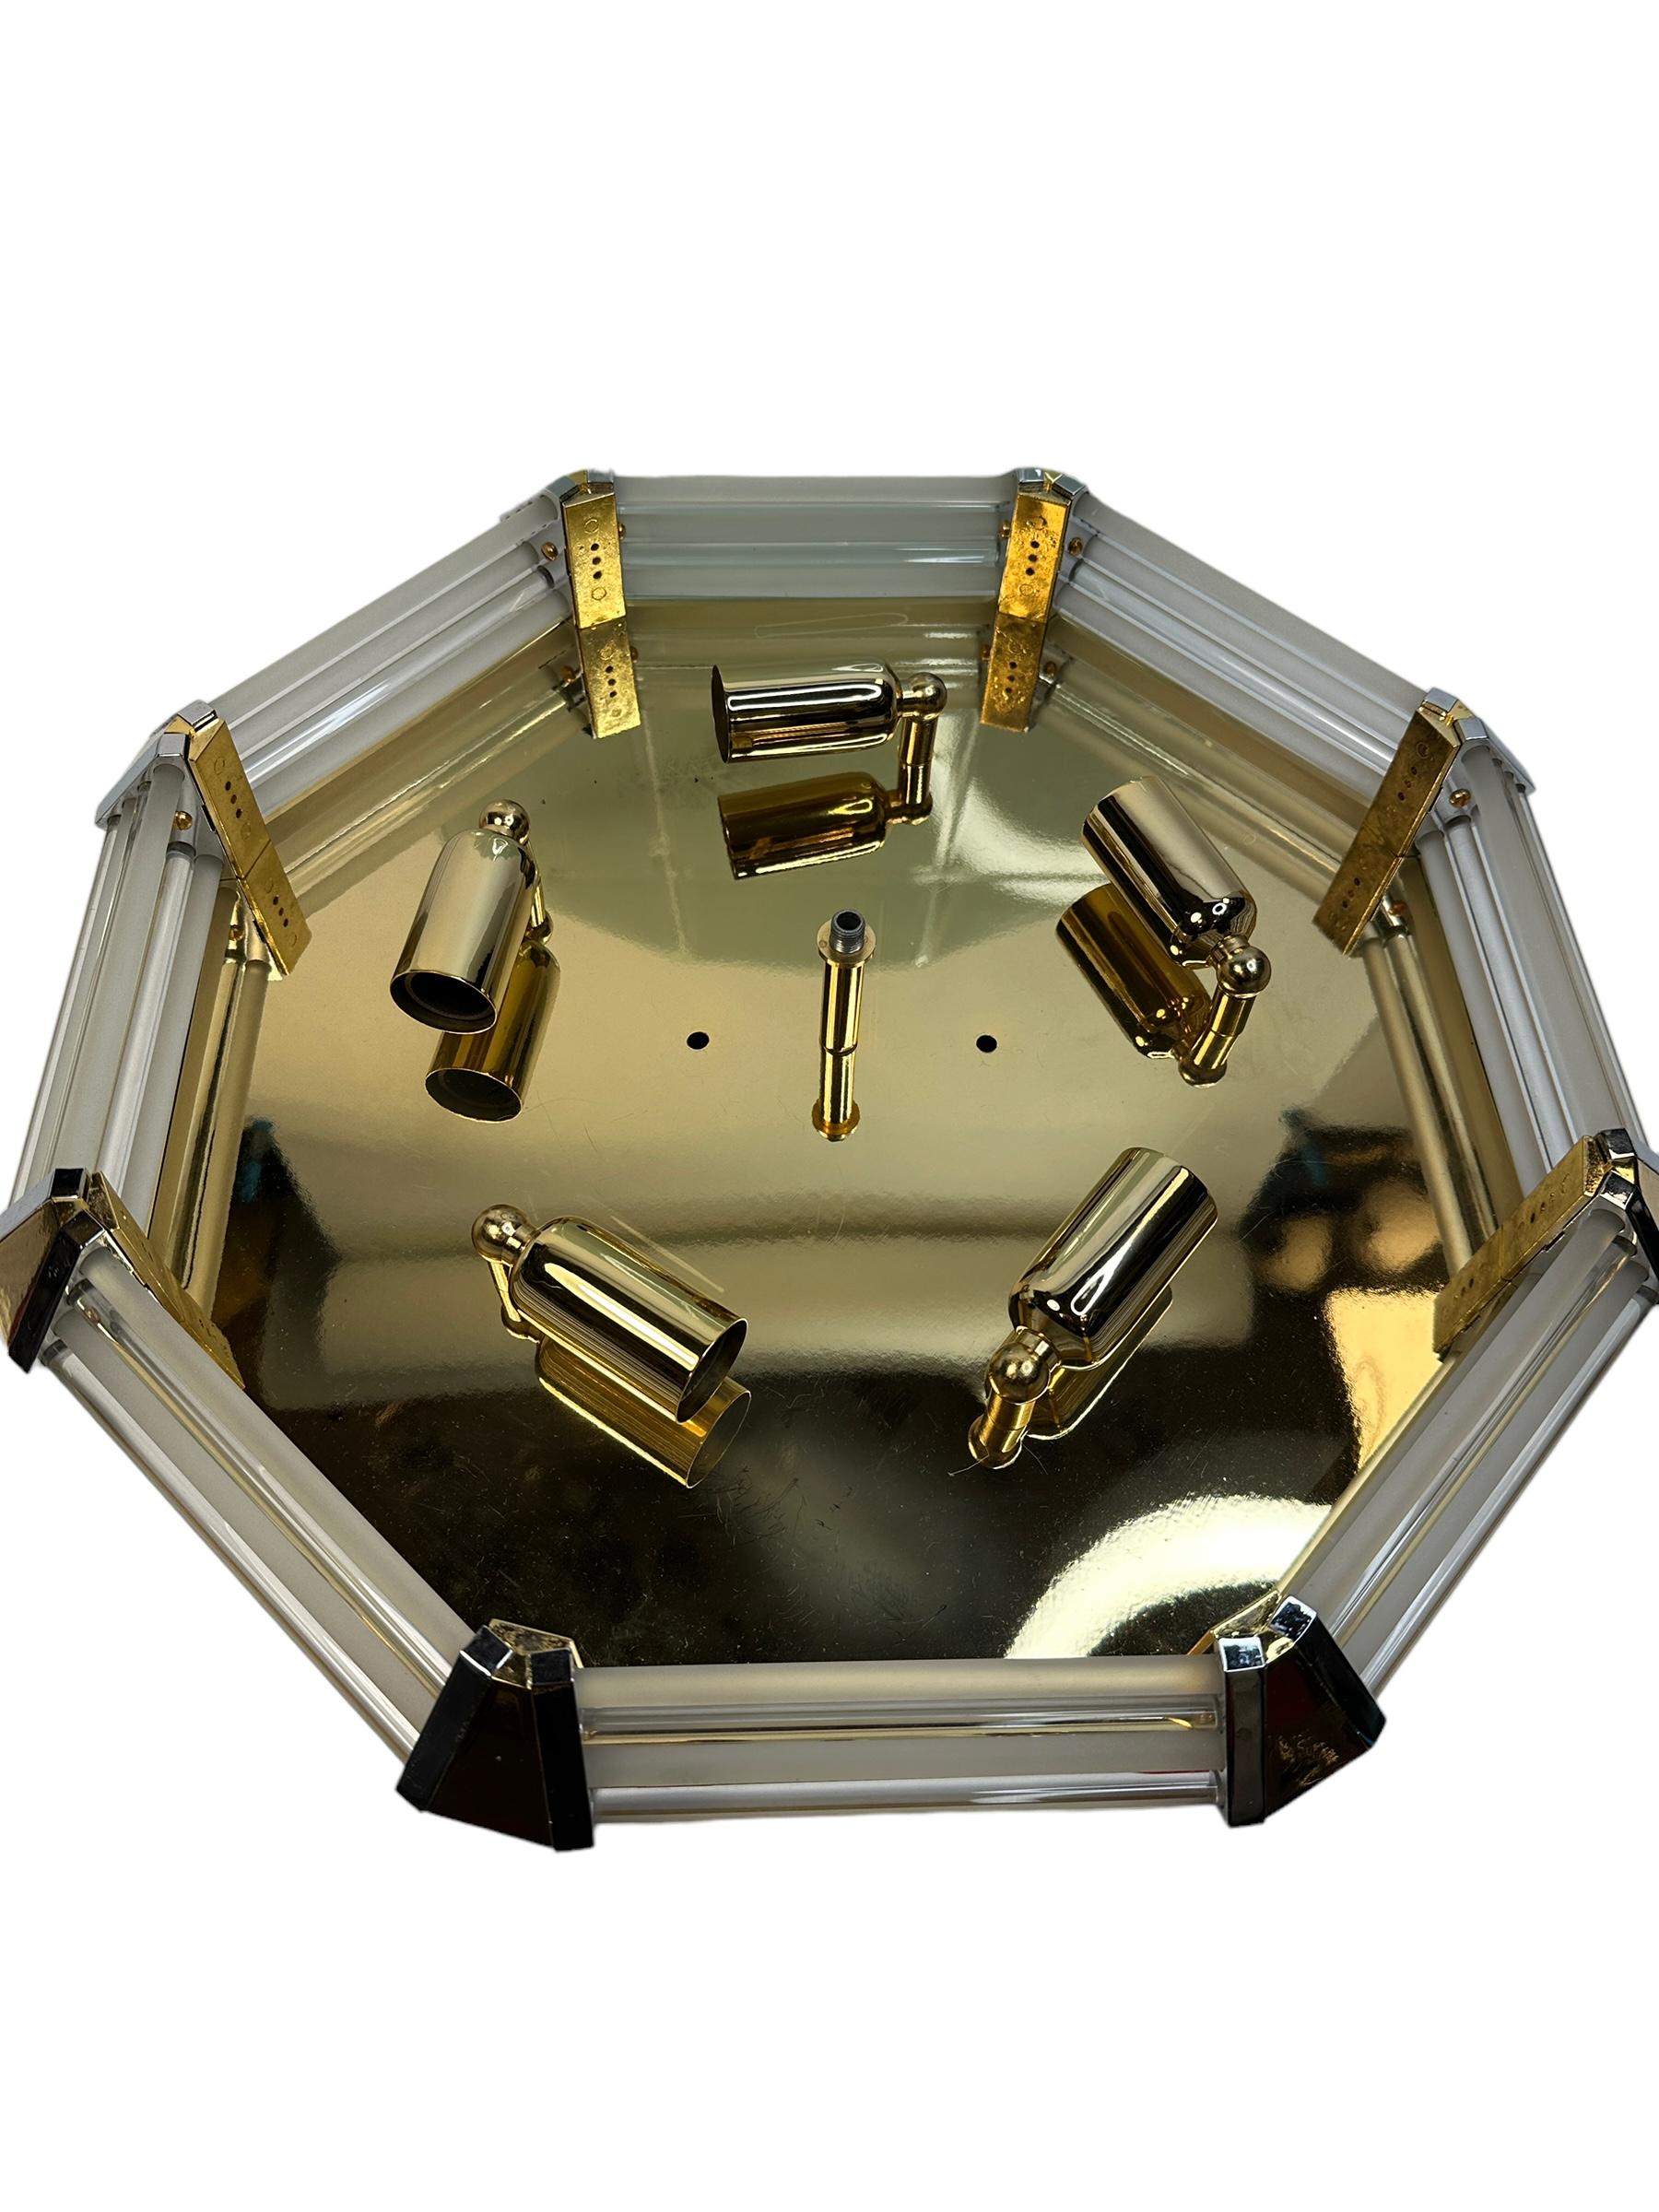 Leola Leuchten Glass, Brass Chrome, Art Deco Style octagonal Flush Mount, 1970s For Sale 6